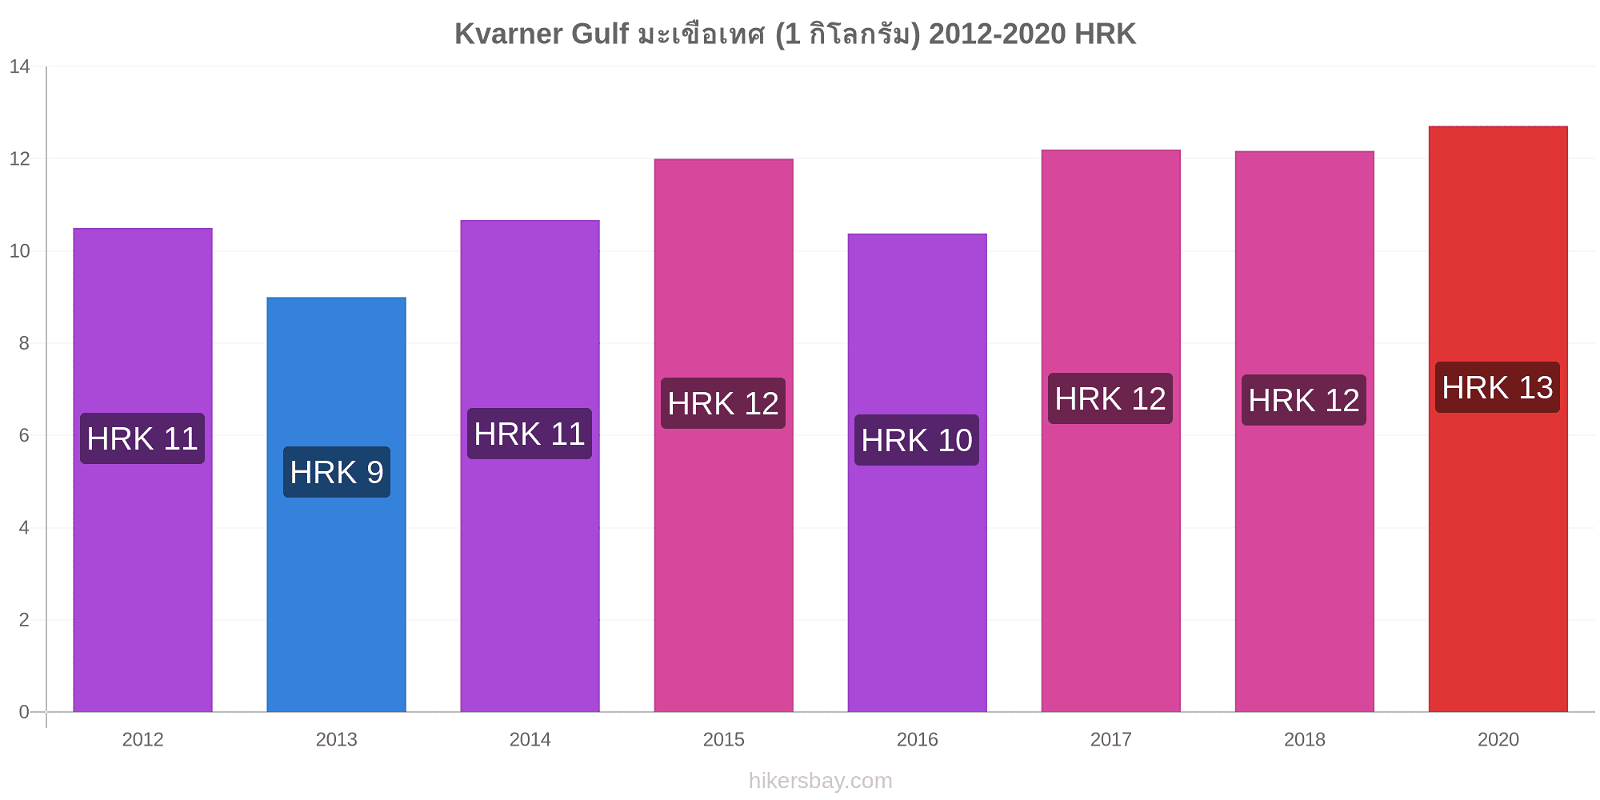 Kvarner Gulf การเปลี่ยนแปลงราคา มะเขือเทศ (1 กิโลกรัม) hikersbay.com